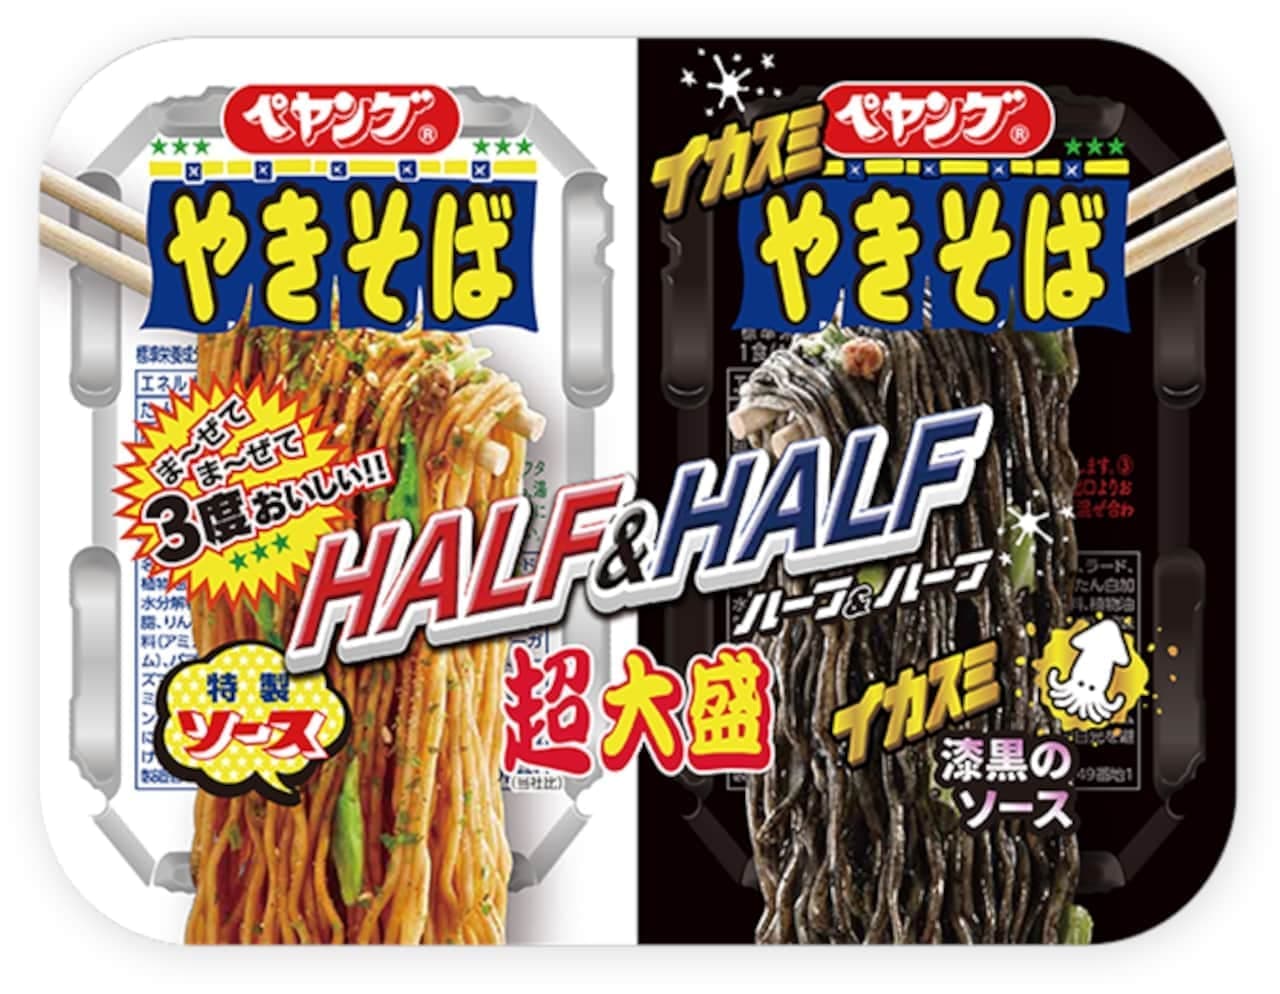 Maruka Foods "Peyoung Super Daimari Yakisoba Half & Half Ikasumi" (Peyoung Super Daimari Yakisoba Half & Half Ikasumi)